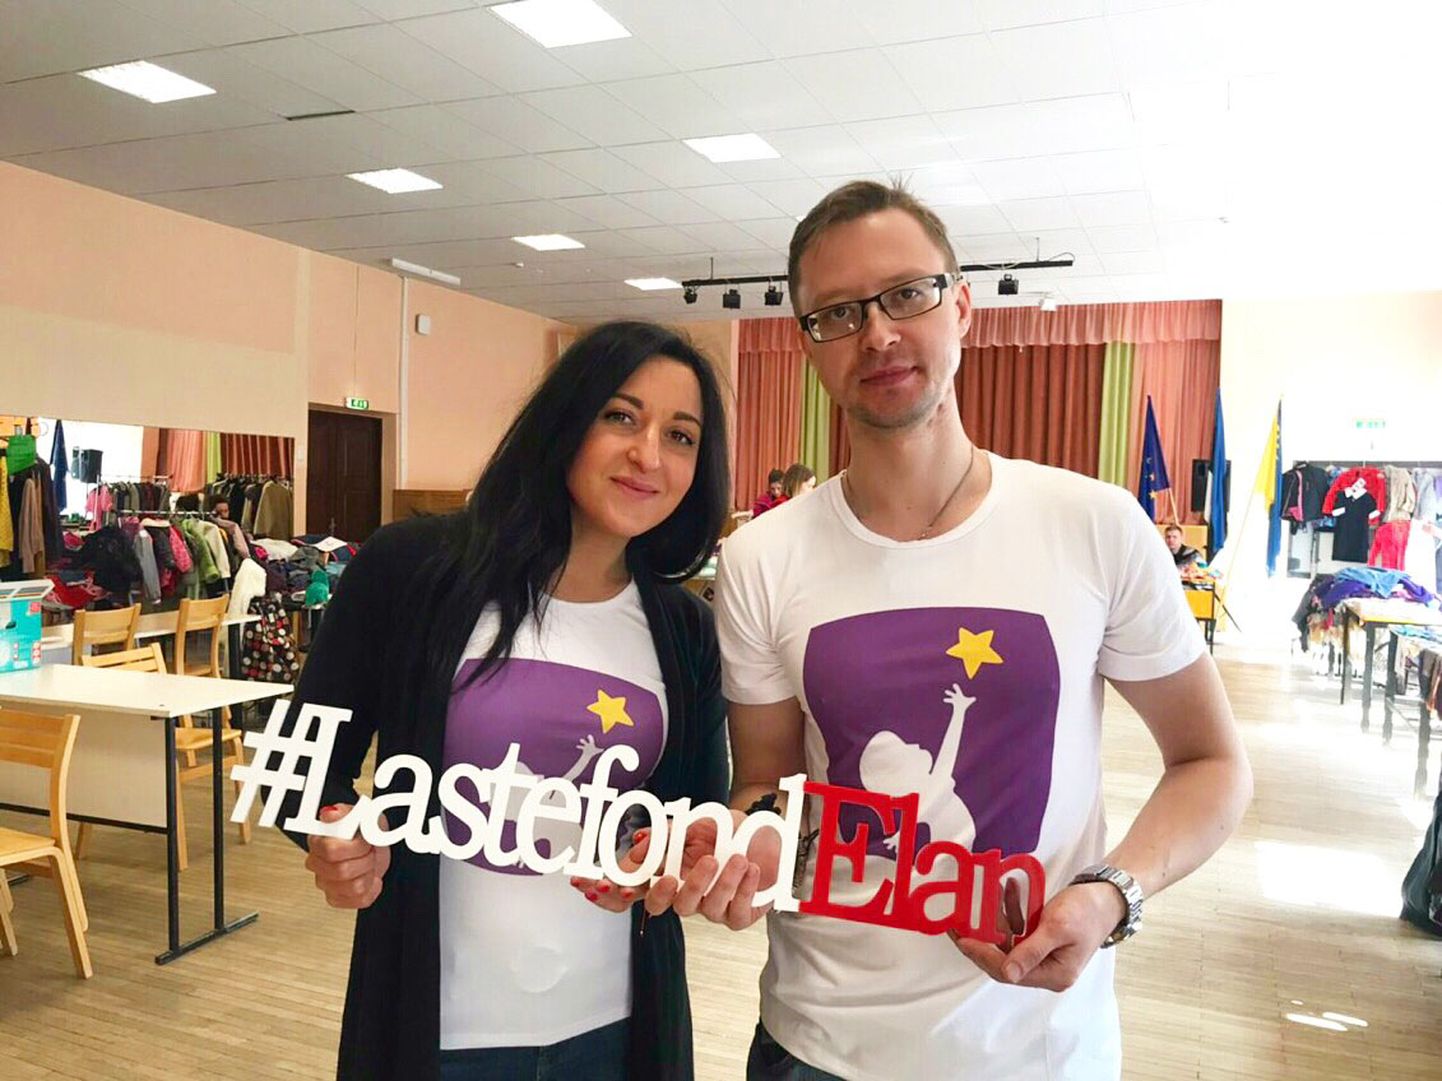 Организаторы первого благотворительного базара Илона Махаррамова и Андрей Игонен считают, что хорошие идеи находят поддержку и понимание со стороны горожан.